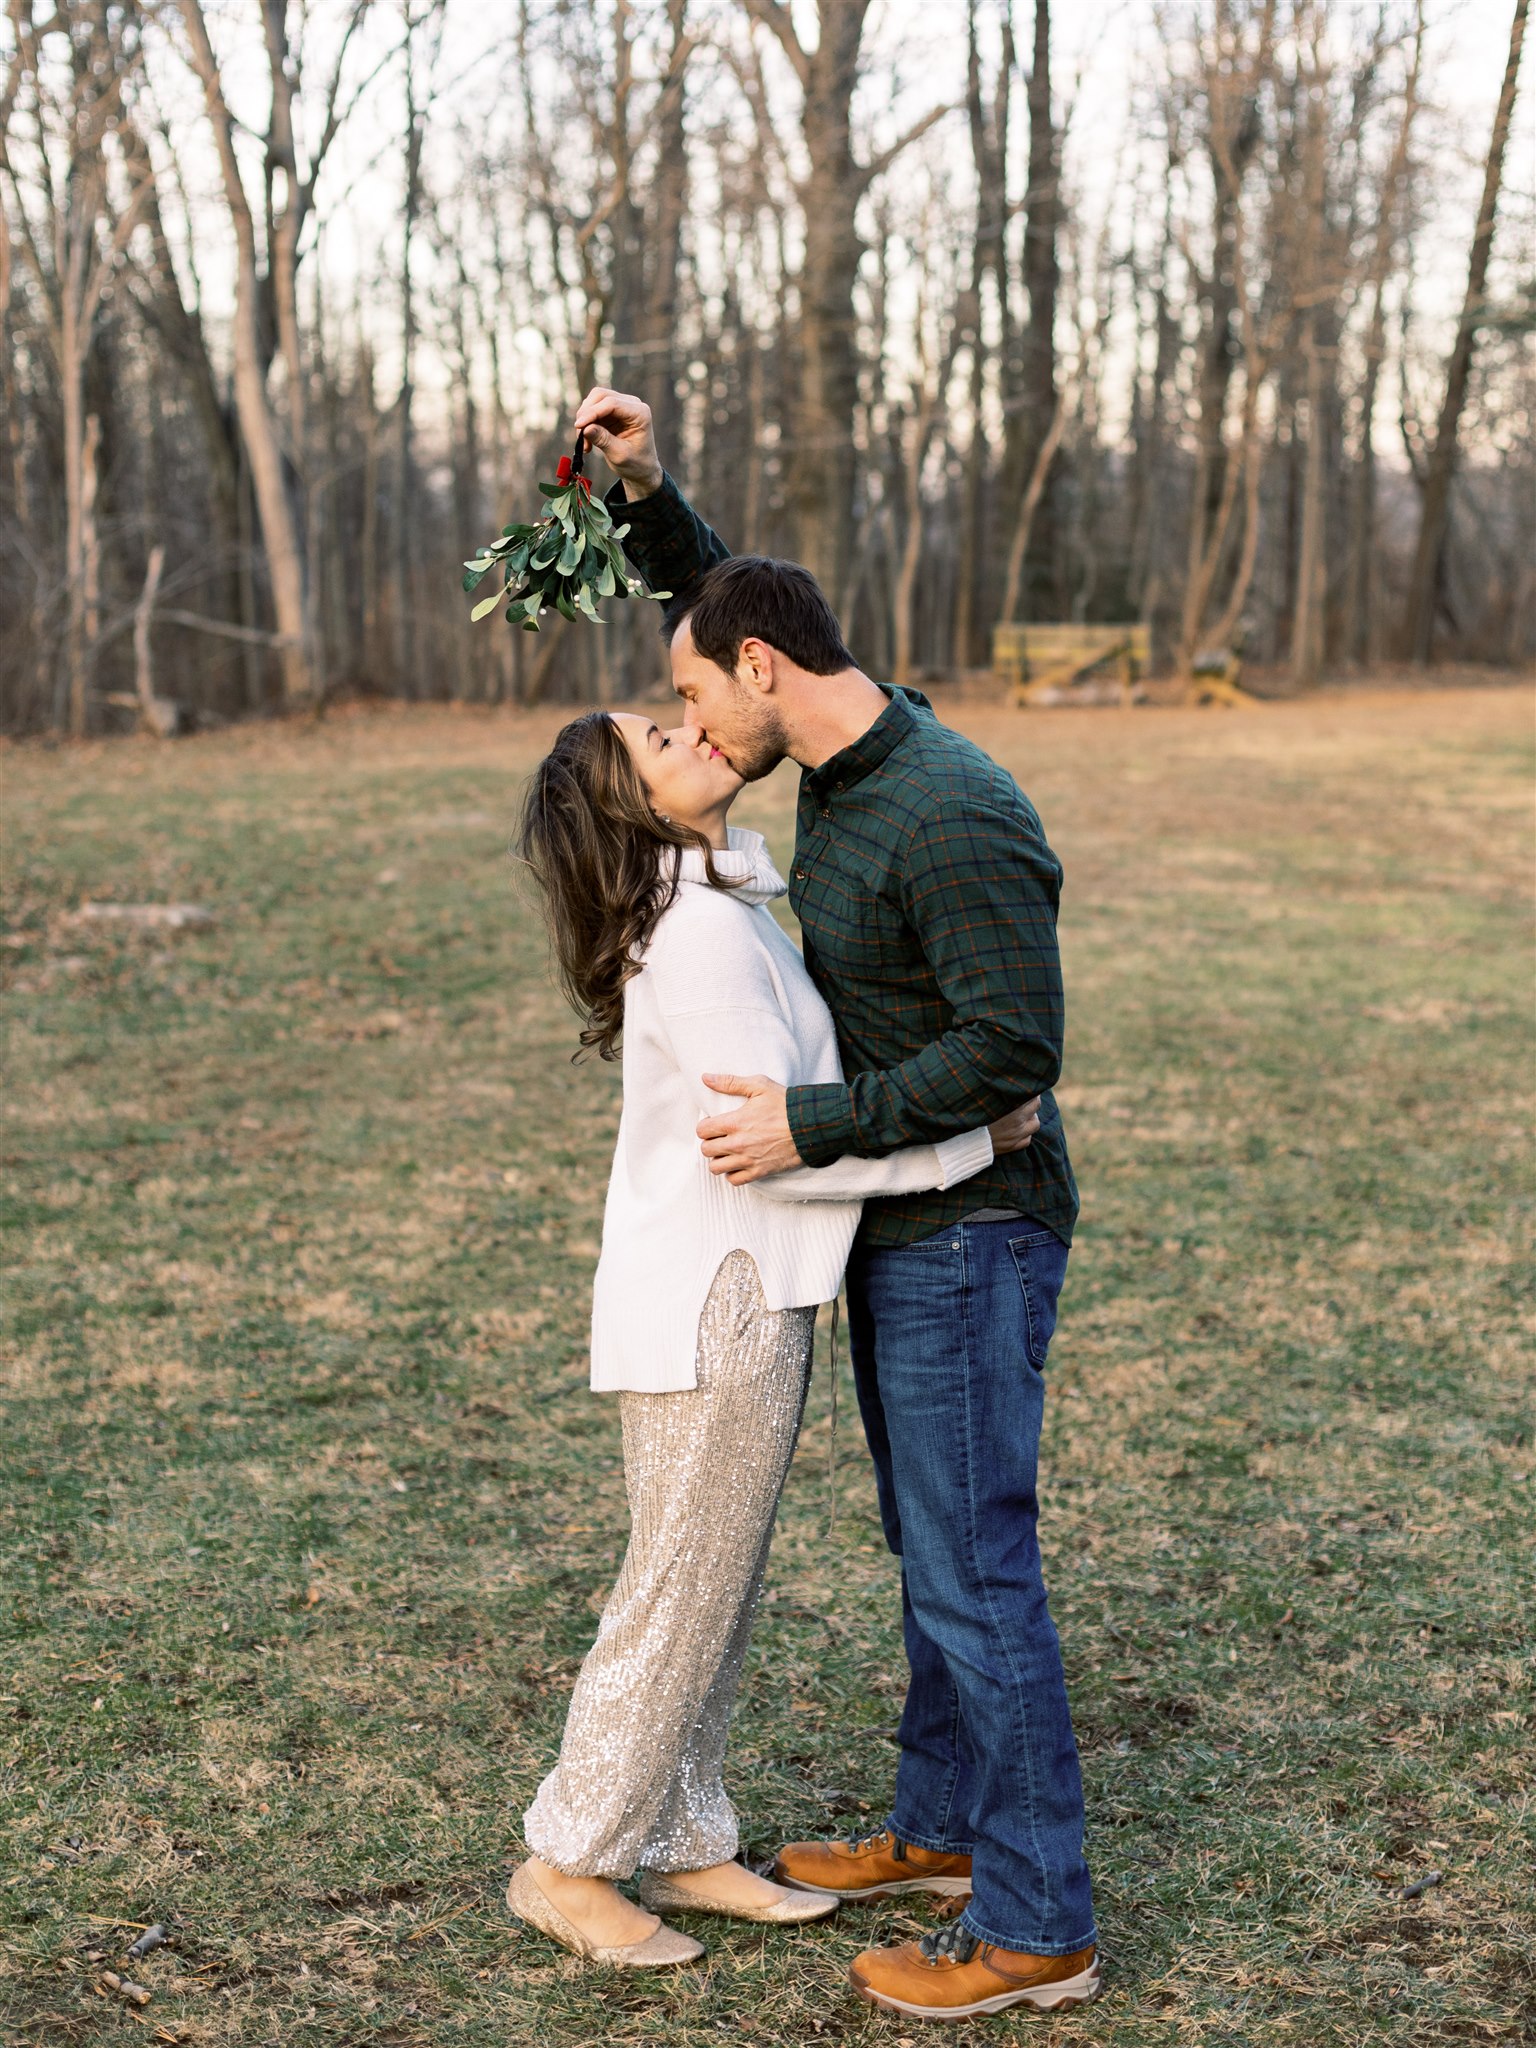 groom holds mistletoe for bride to kiss under